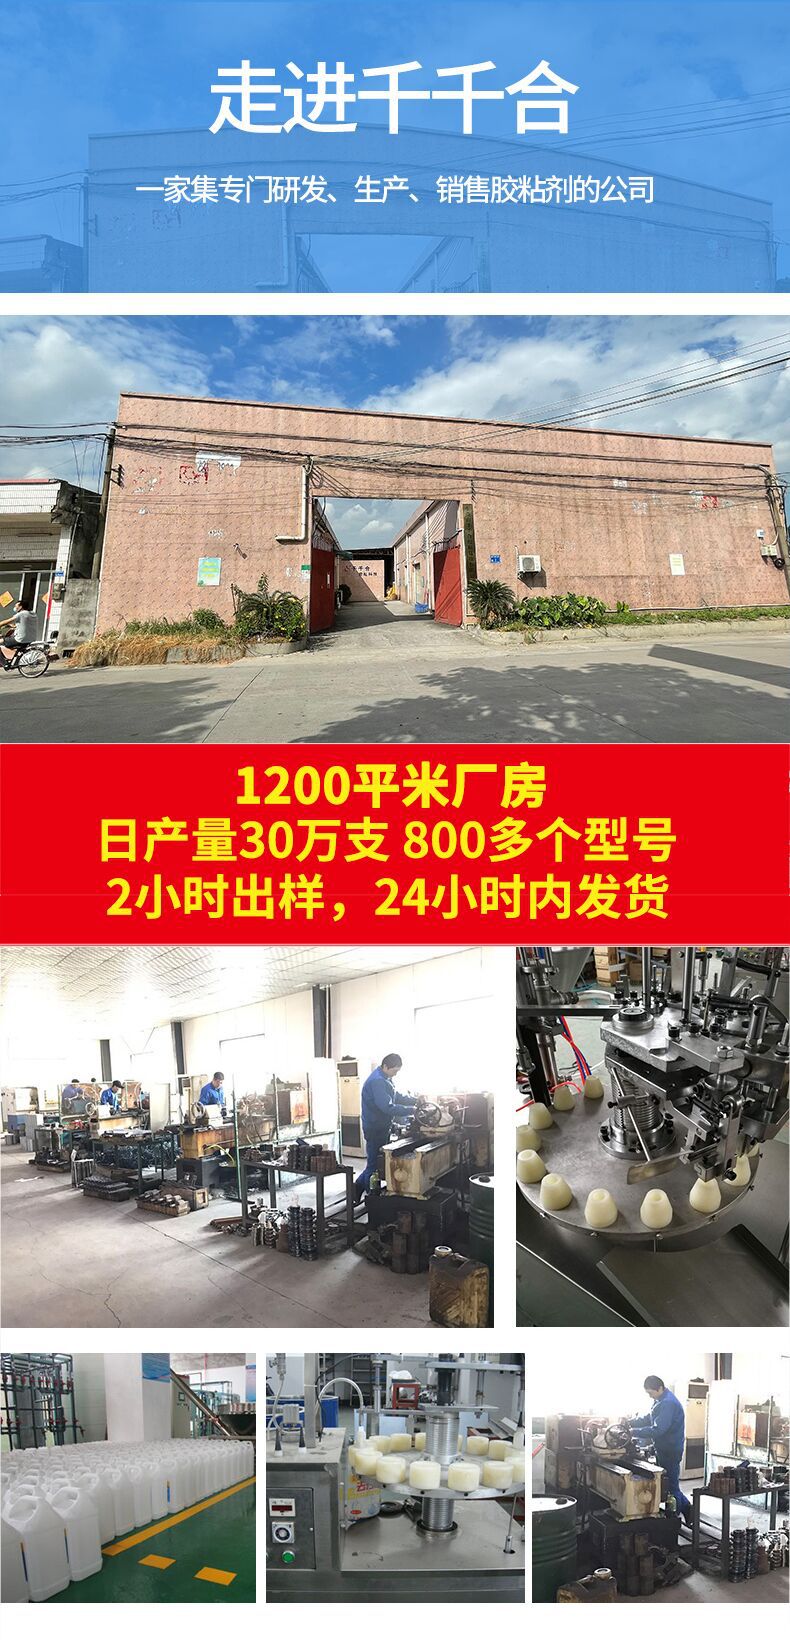 Технология клеевой технологии Dongguan Qian Qianhe имеет Компания